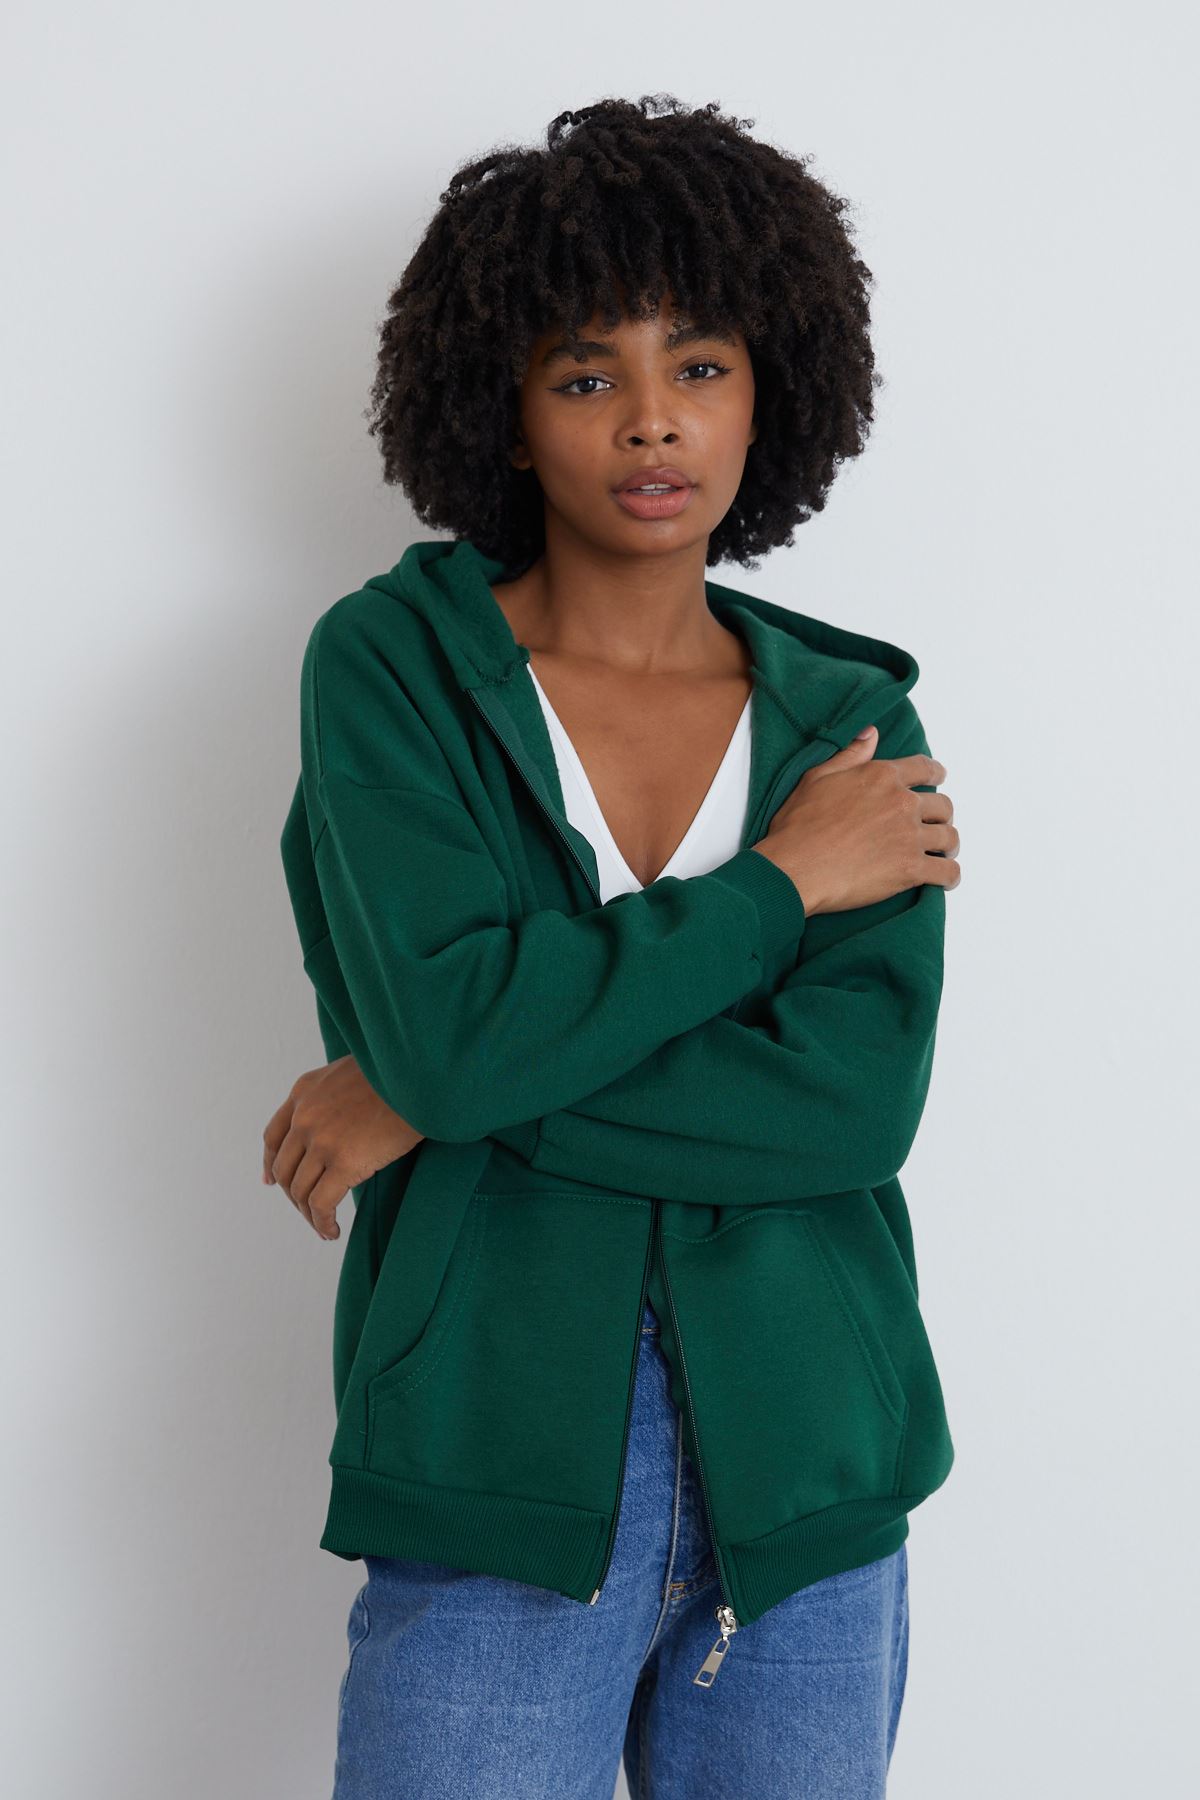 Ön Fermuarlı Kapşonlu Sweatshirt Hırka-Zümrüt Yeşil